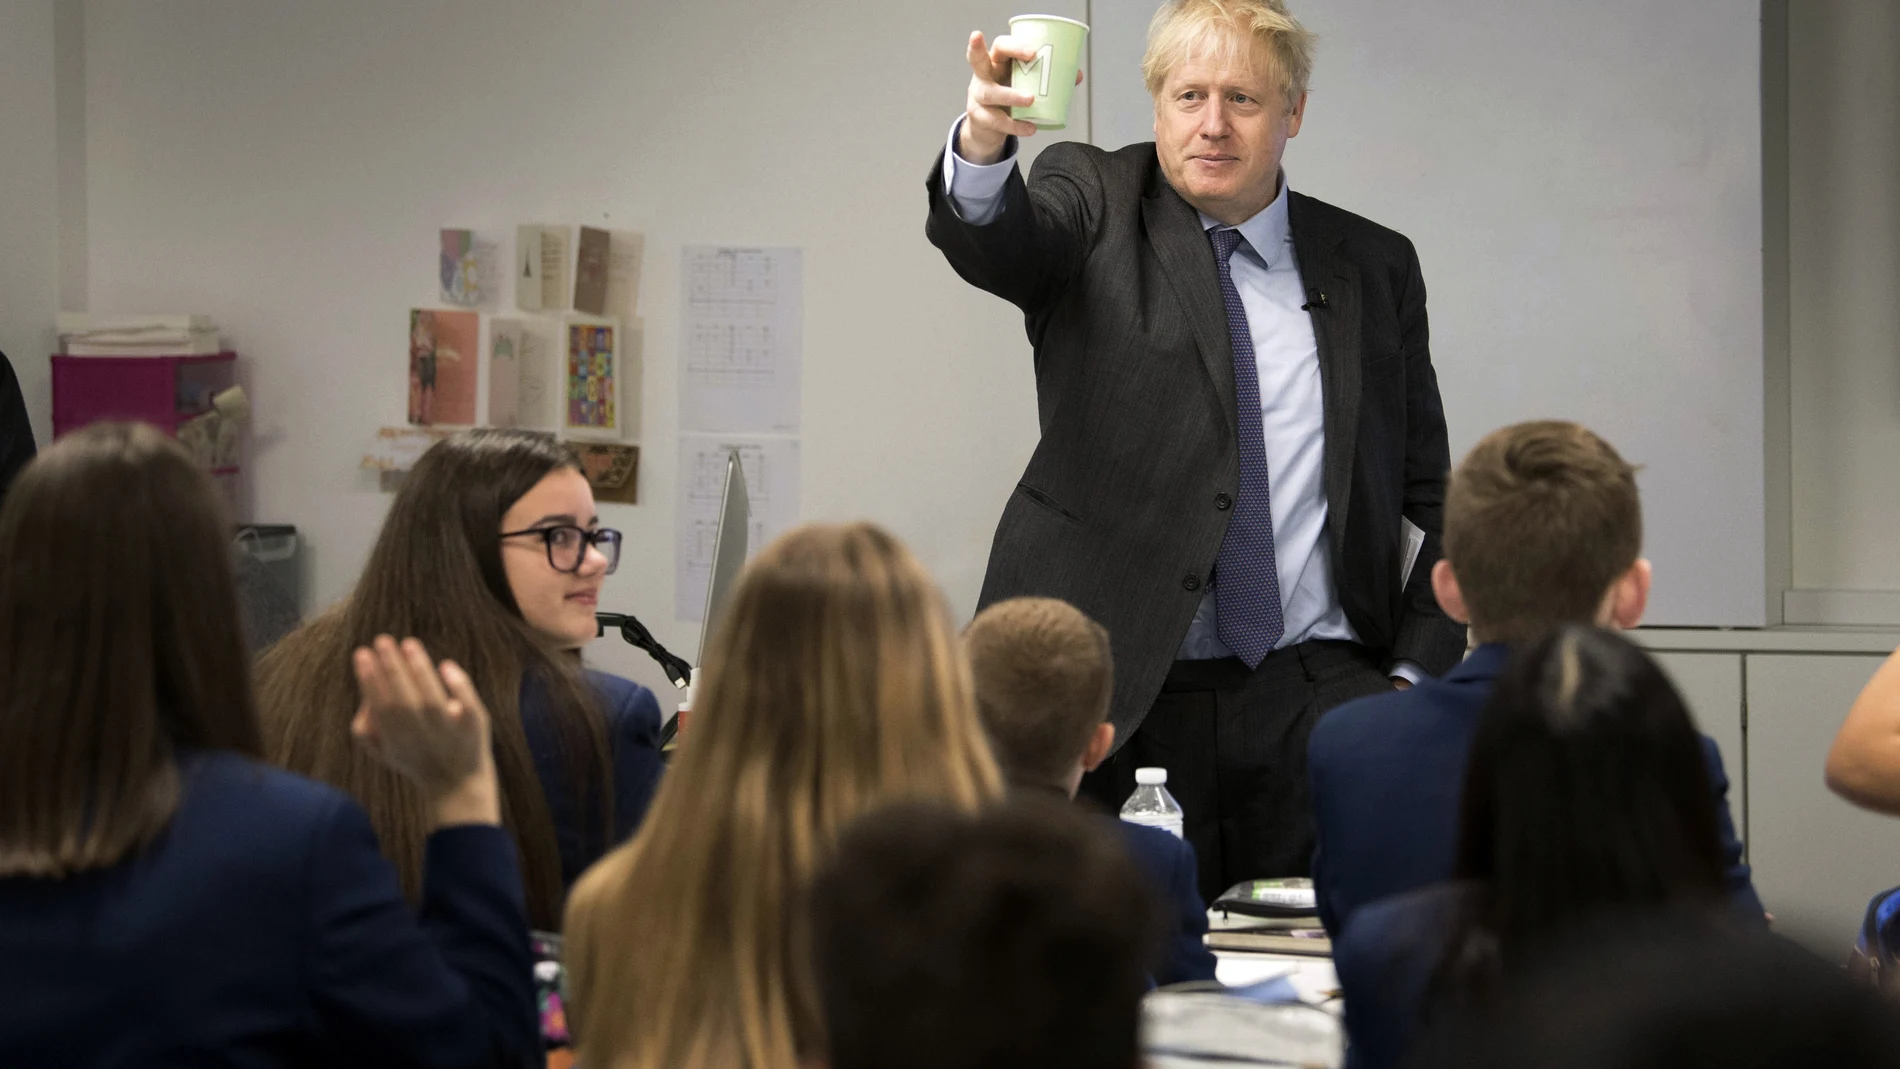 El primer ministro británico, Boris Johnson, durante una visita a un instituto en Uxbridge, al oeste de Londres